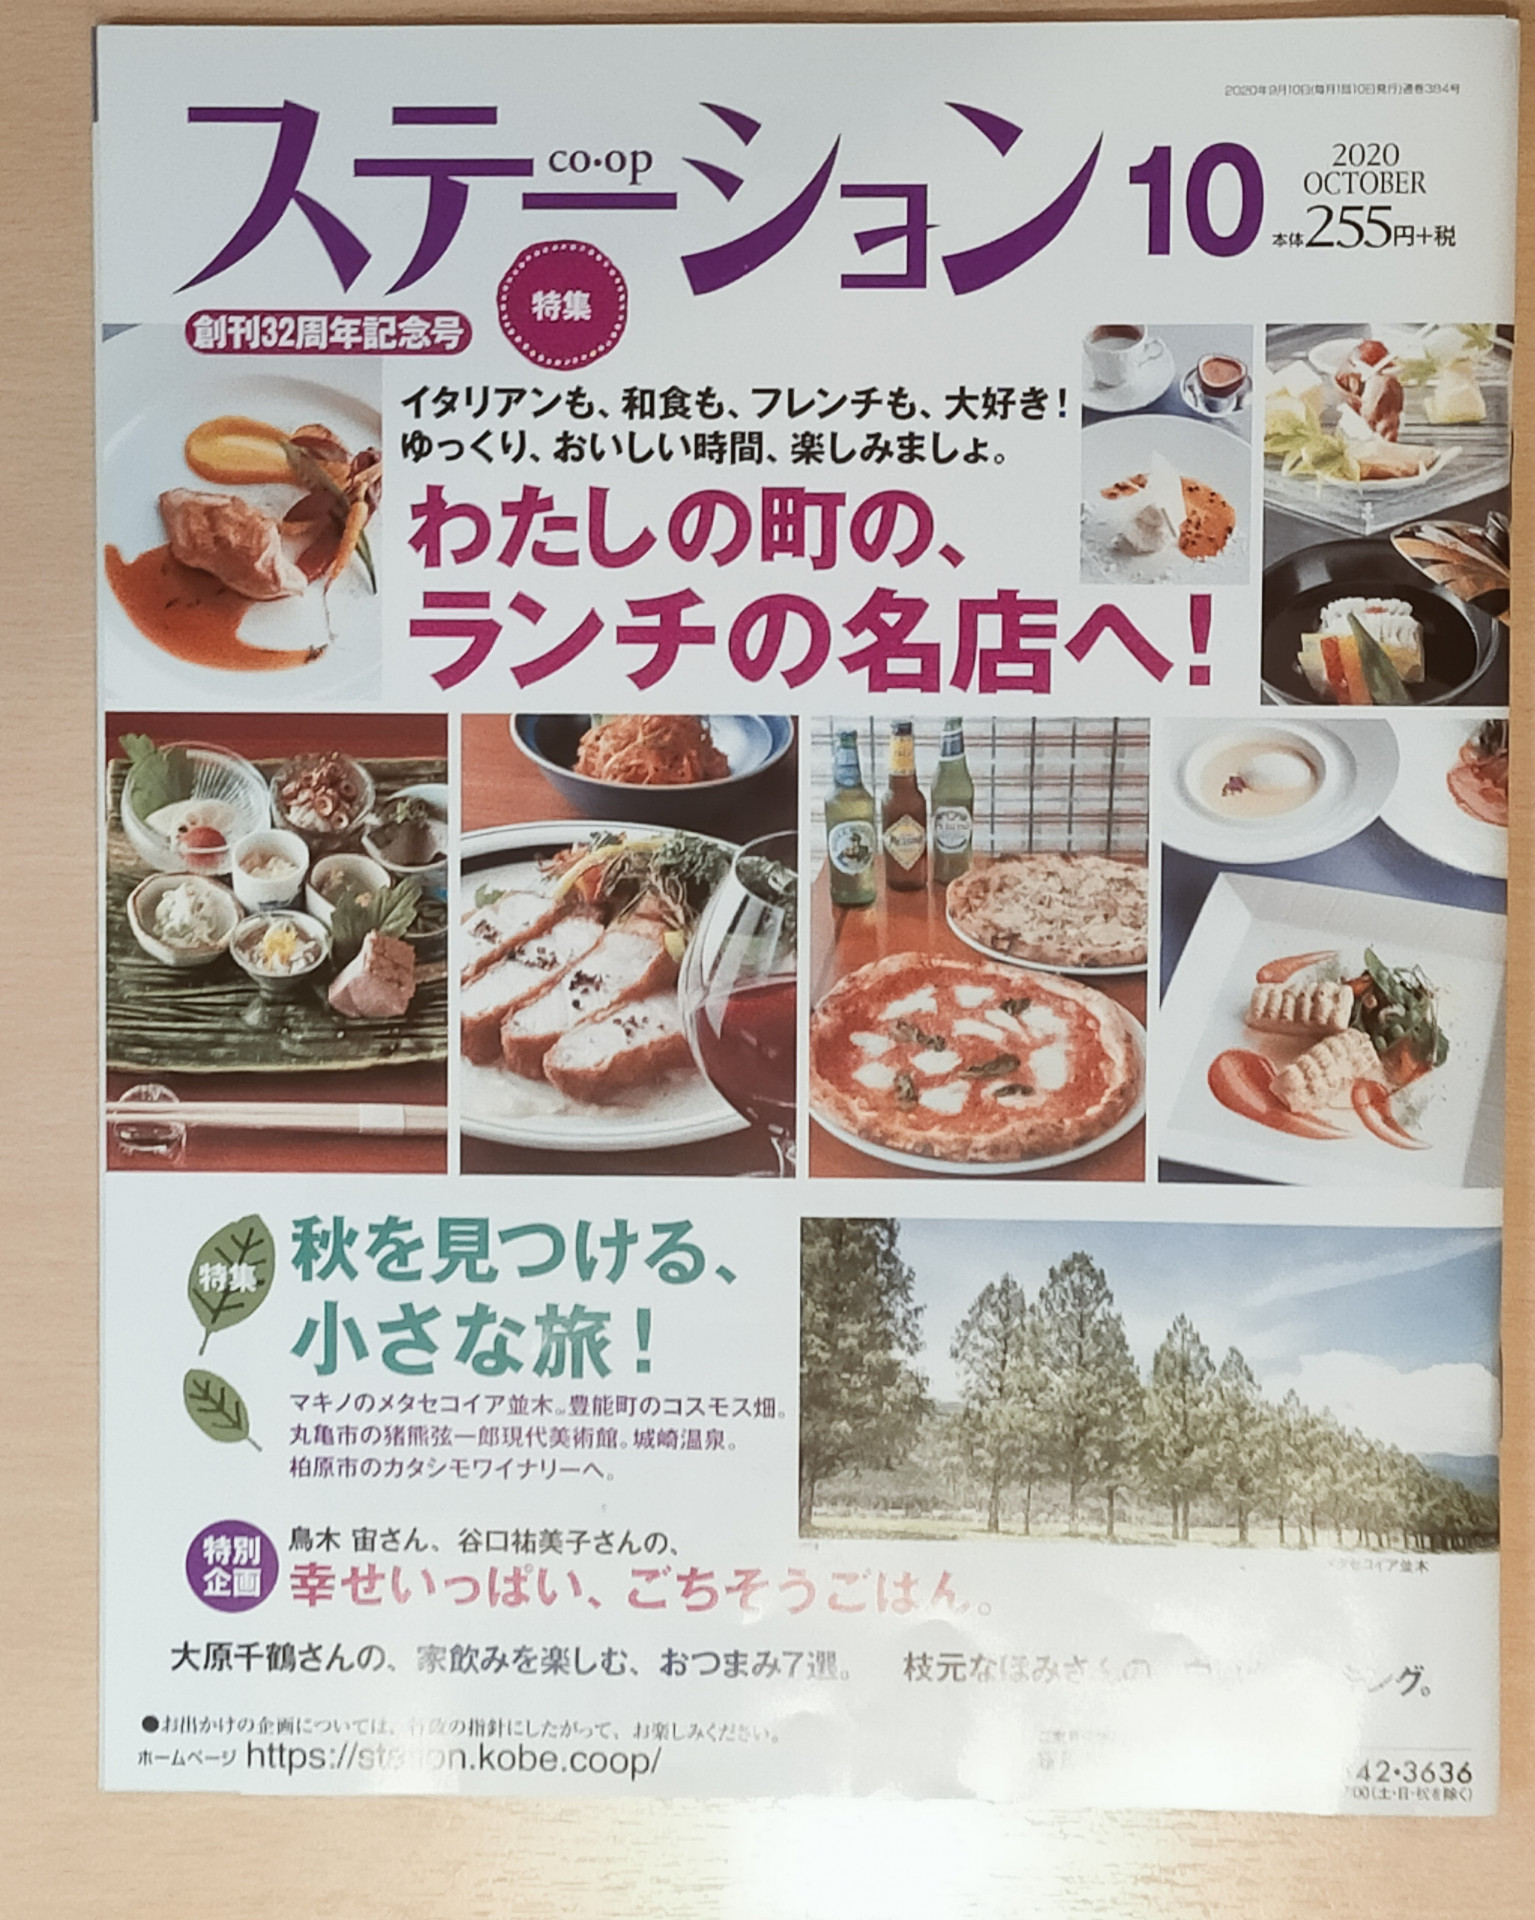 三田駅前でランチ営業してます 三田市で和食ランチ食べるならおととごはん味保へ 三田の和食料理店 おととごはん味保はシーズンごとにお料理が変わります